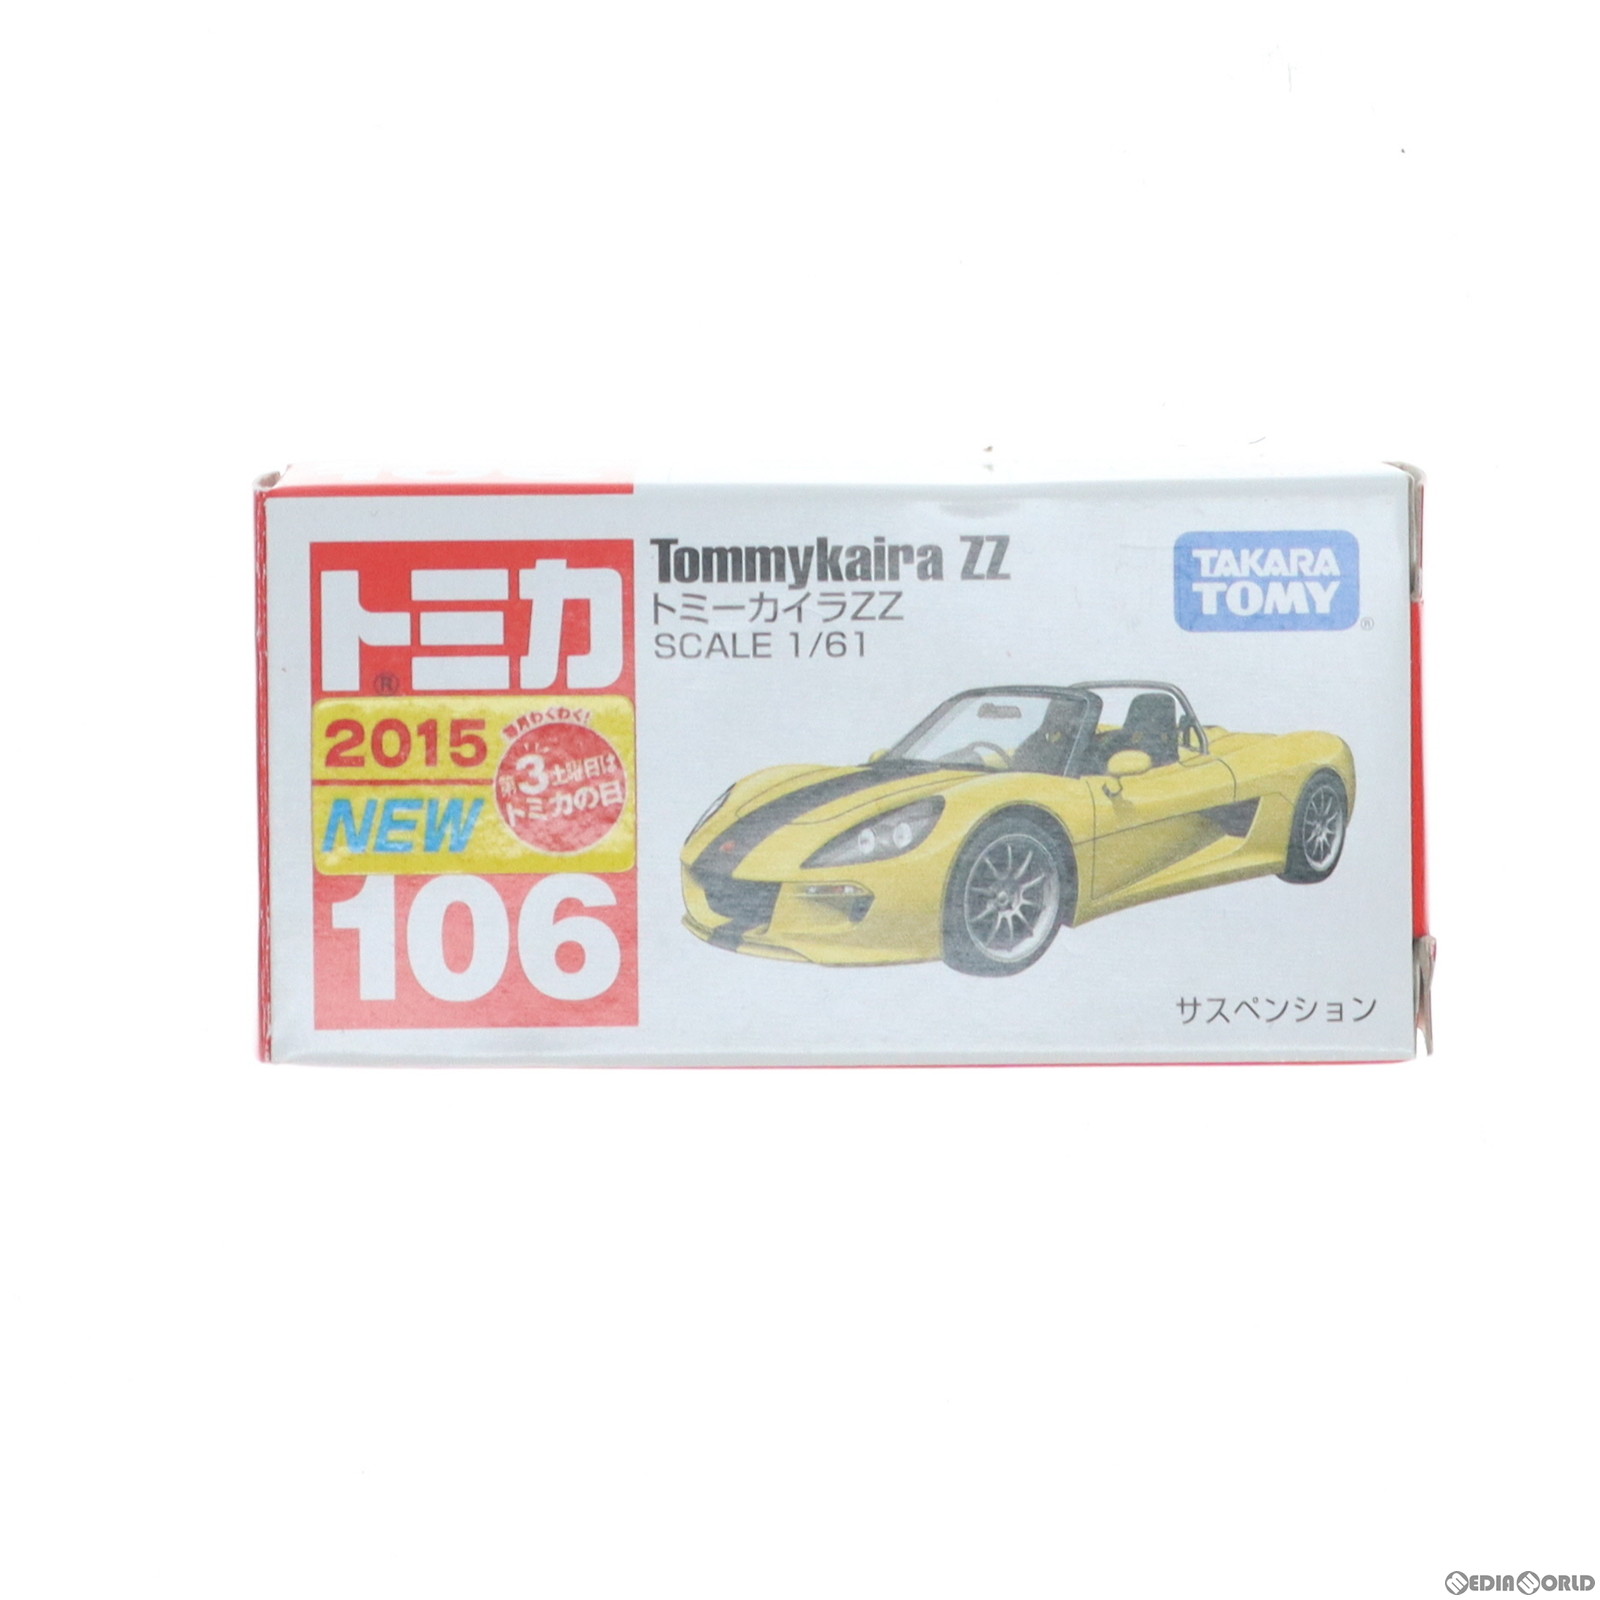 【中古】[MDL]トミカ No.106 1/61 トミーカイラZZ(イエロー/箱) 完成品 ミニカー タカラトミー(20150321)